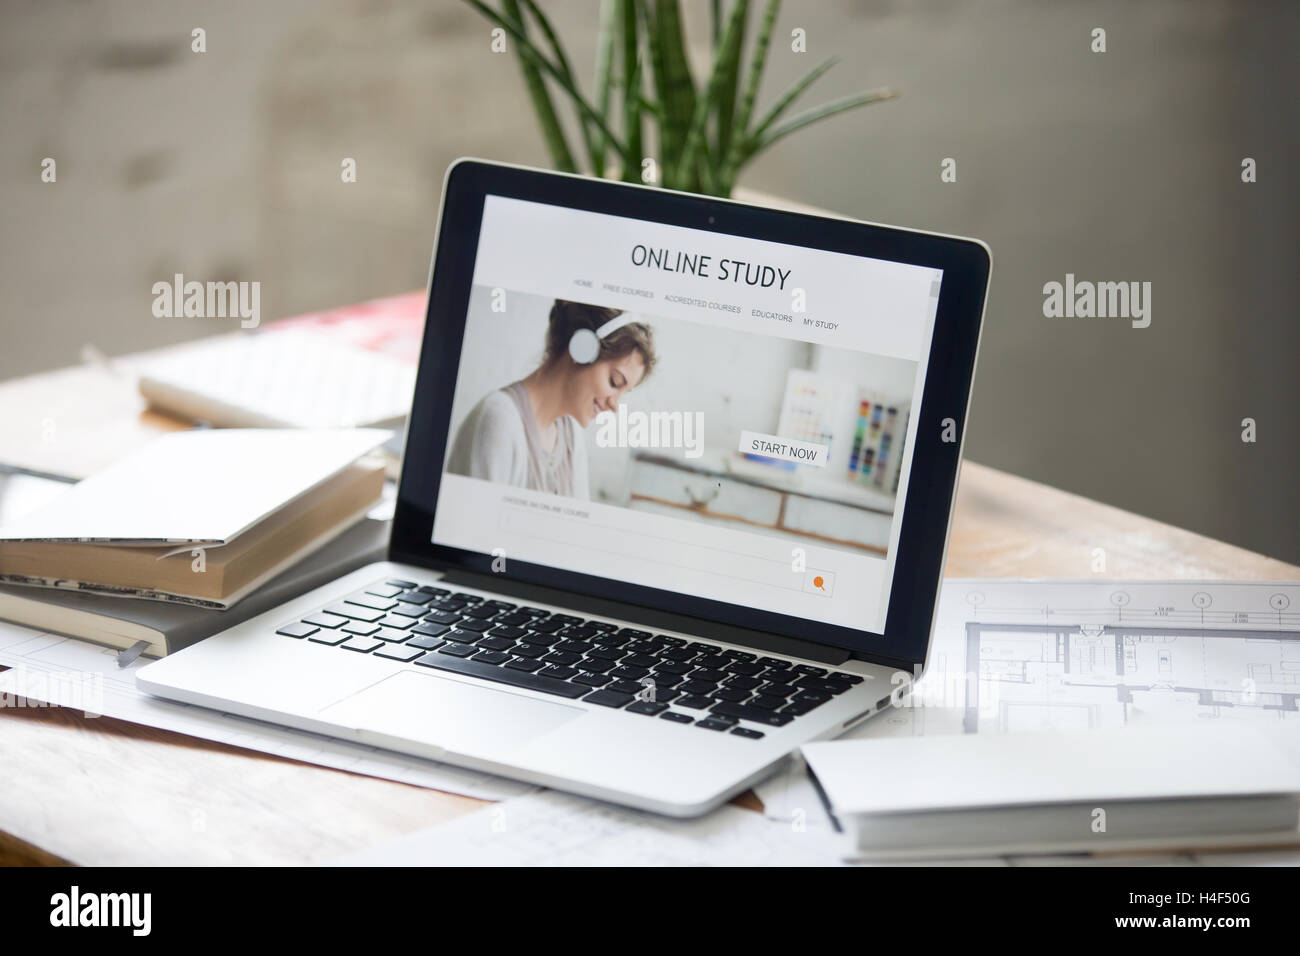 Offenen Laptop auf dem Schreibtisch, Online-Studie auf dem Bildschirm Stockfoto